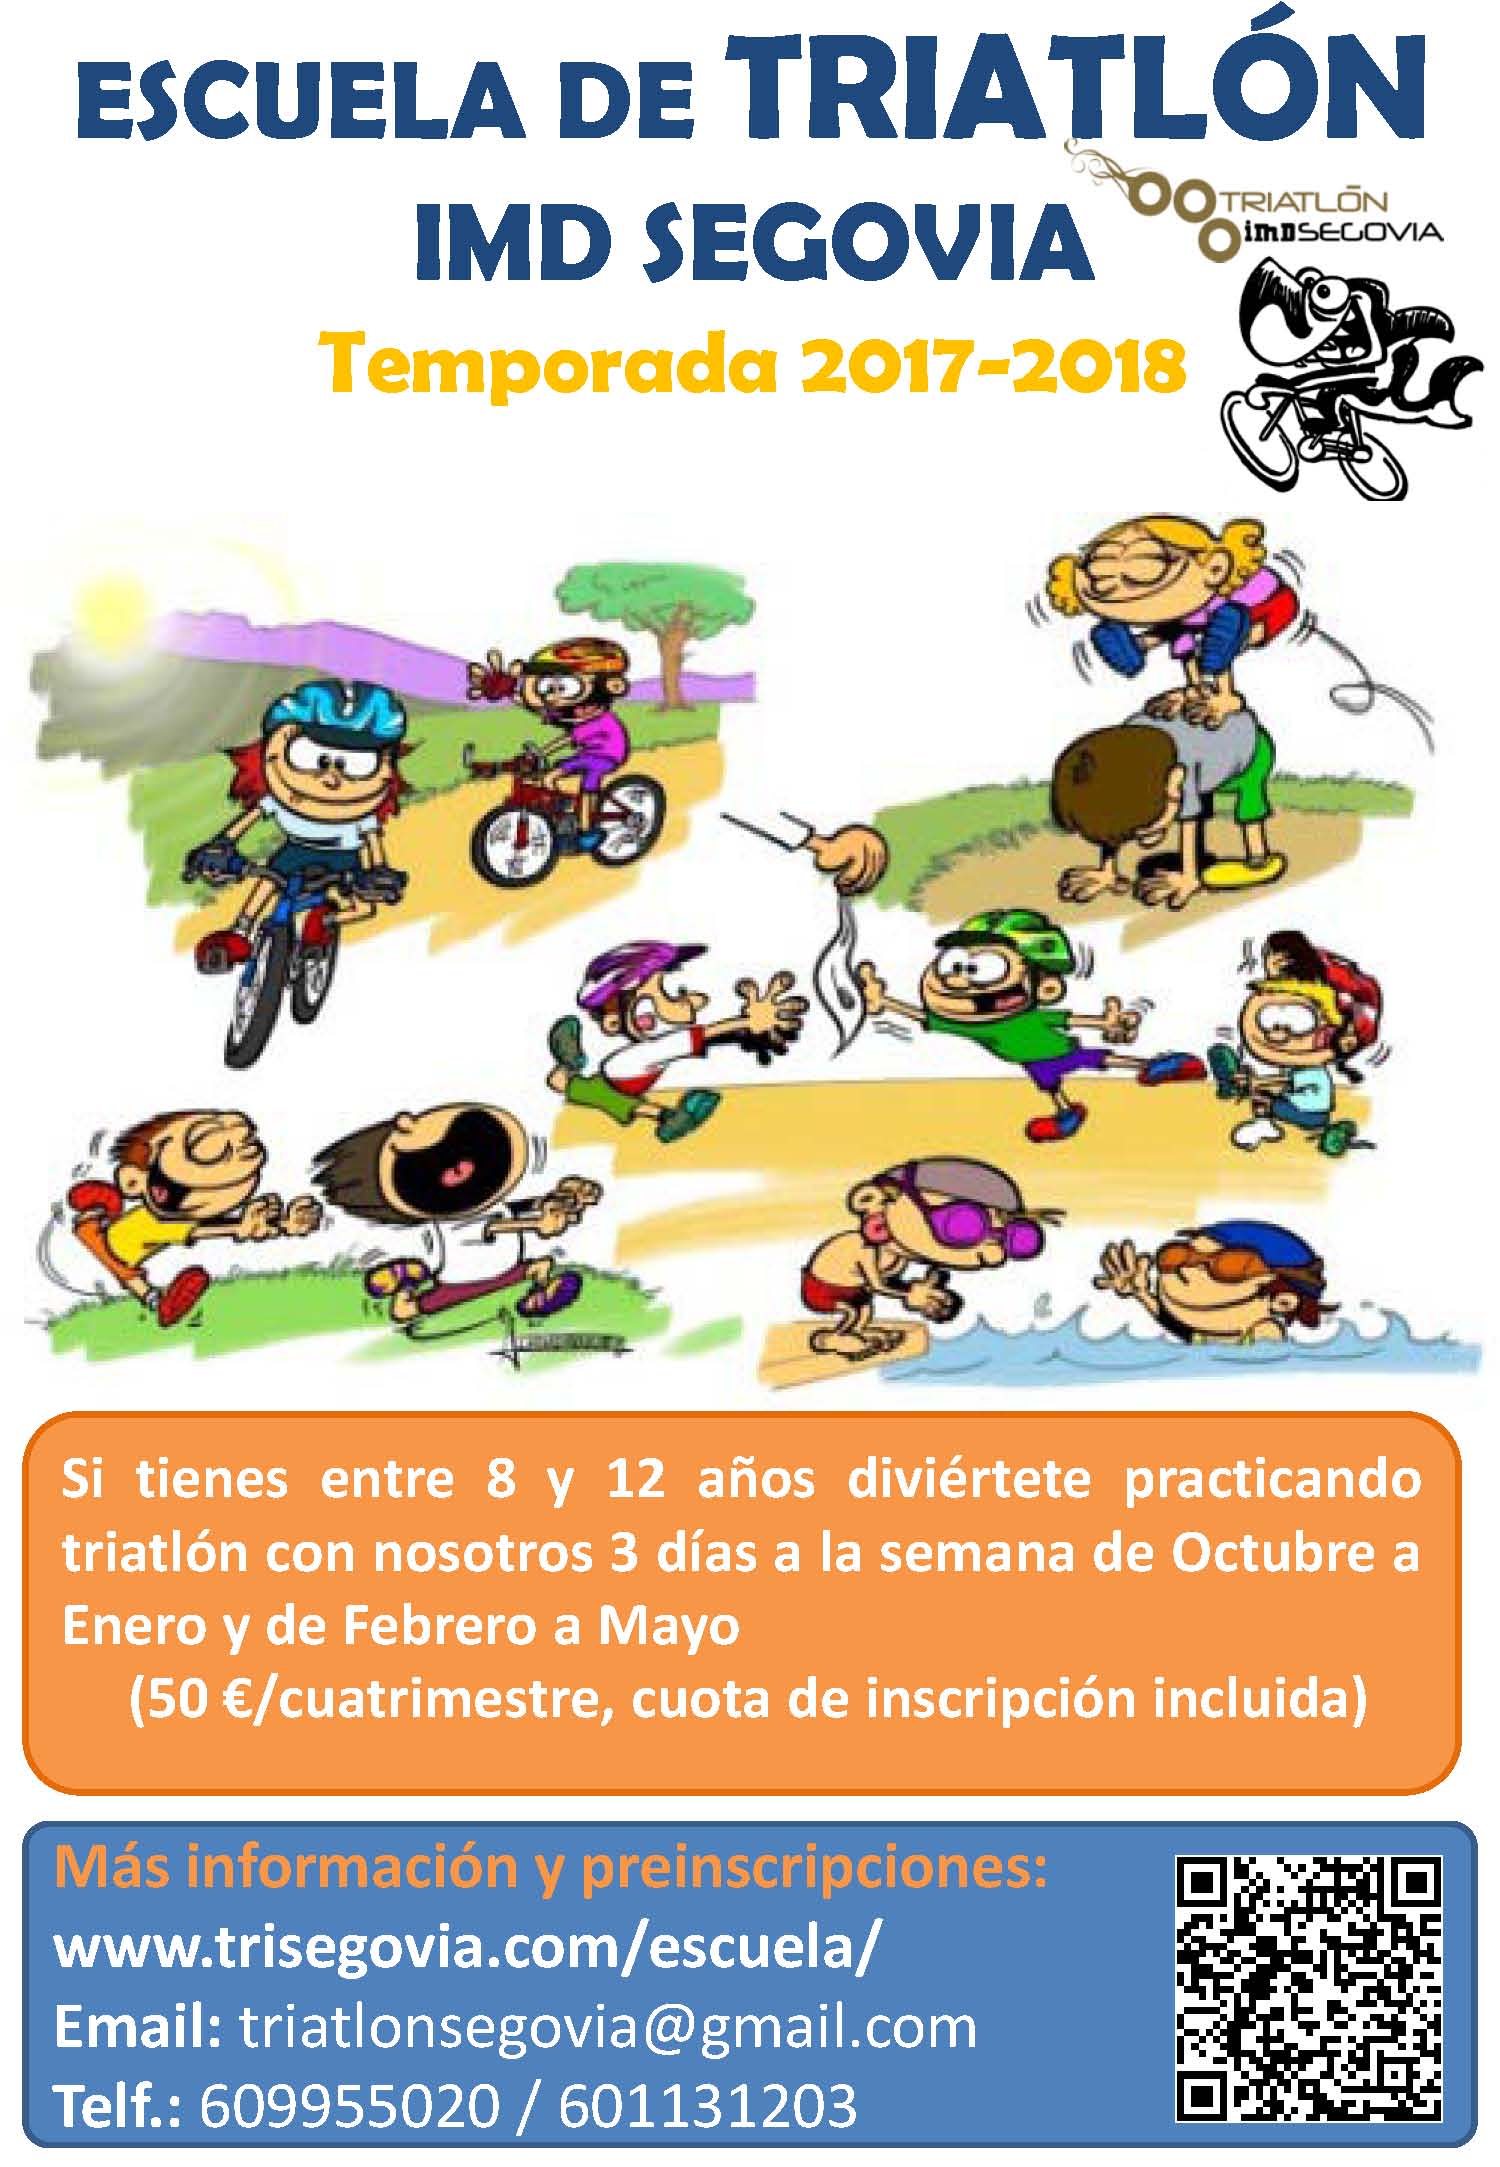 La Escuela de Triatlón IMD Segovia prepara la Temporada 2017-18